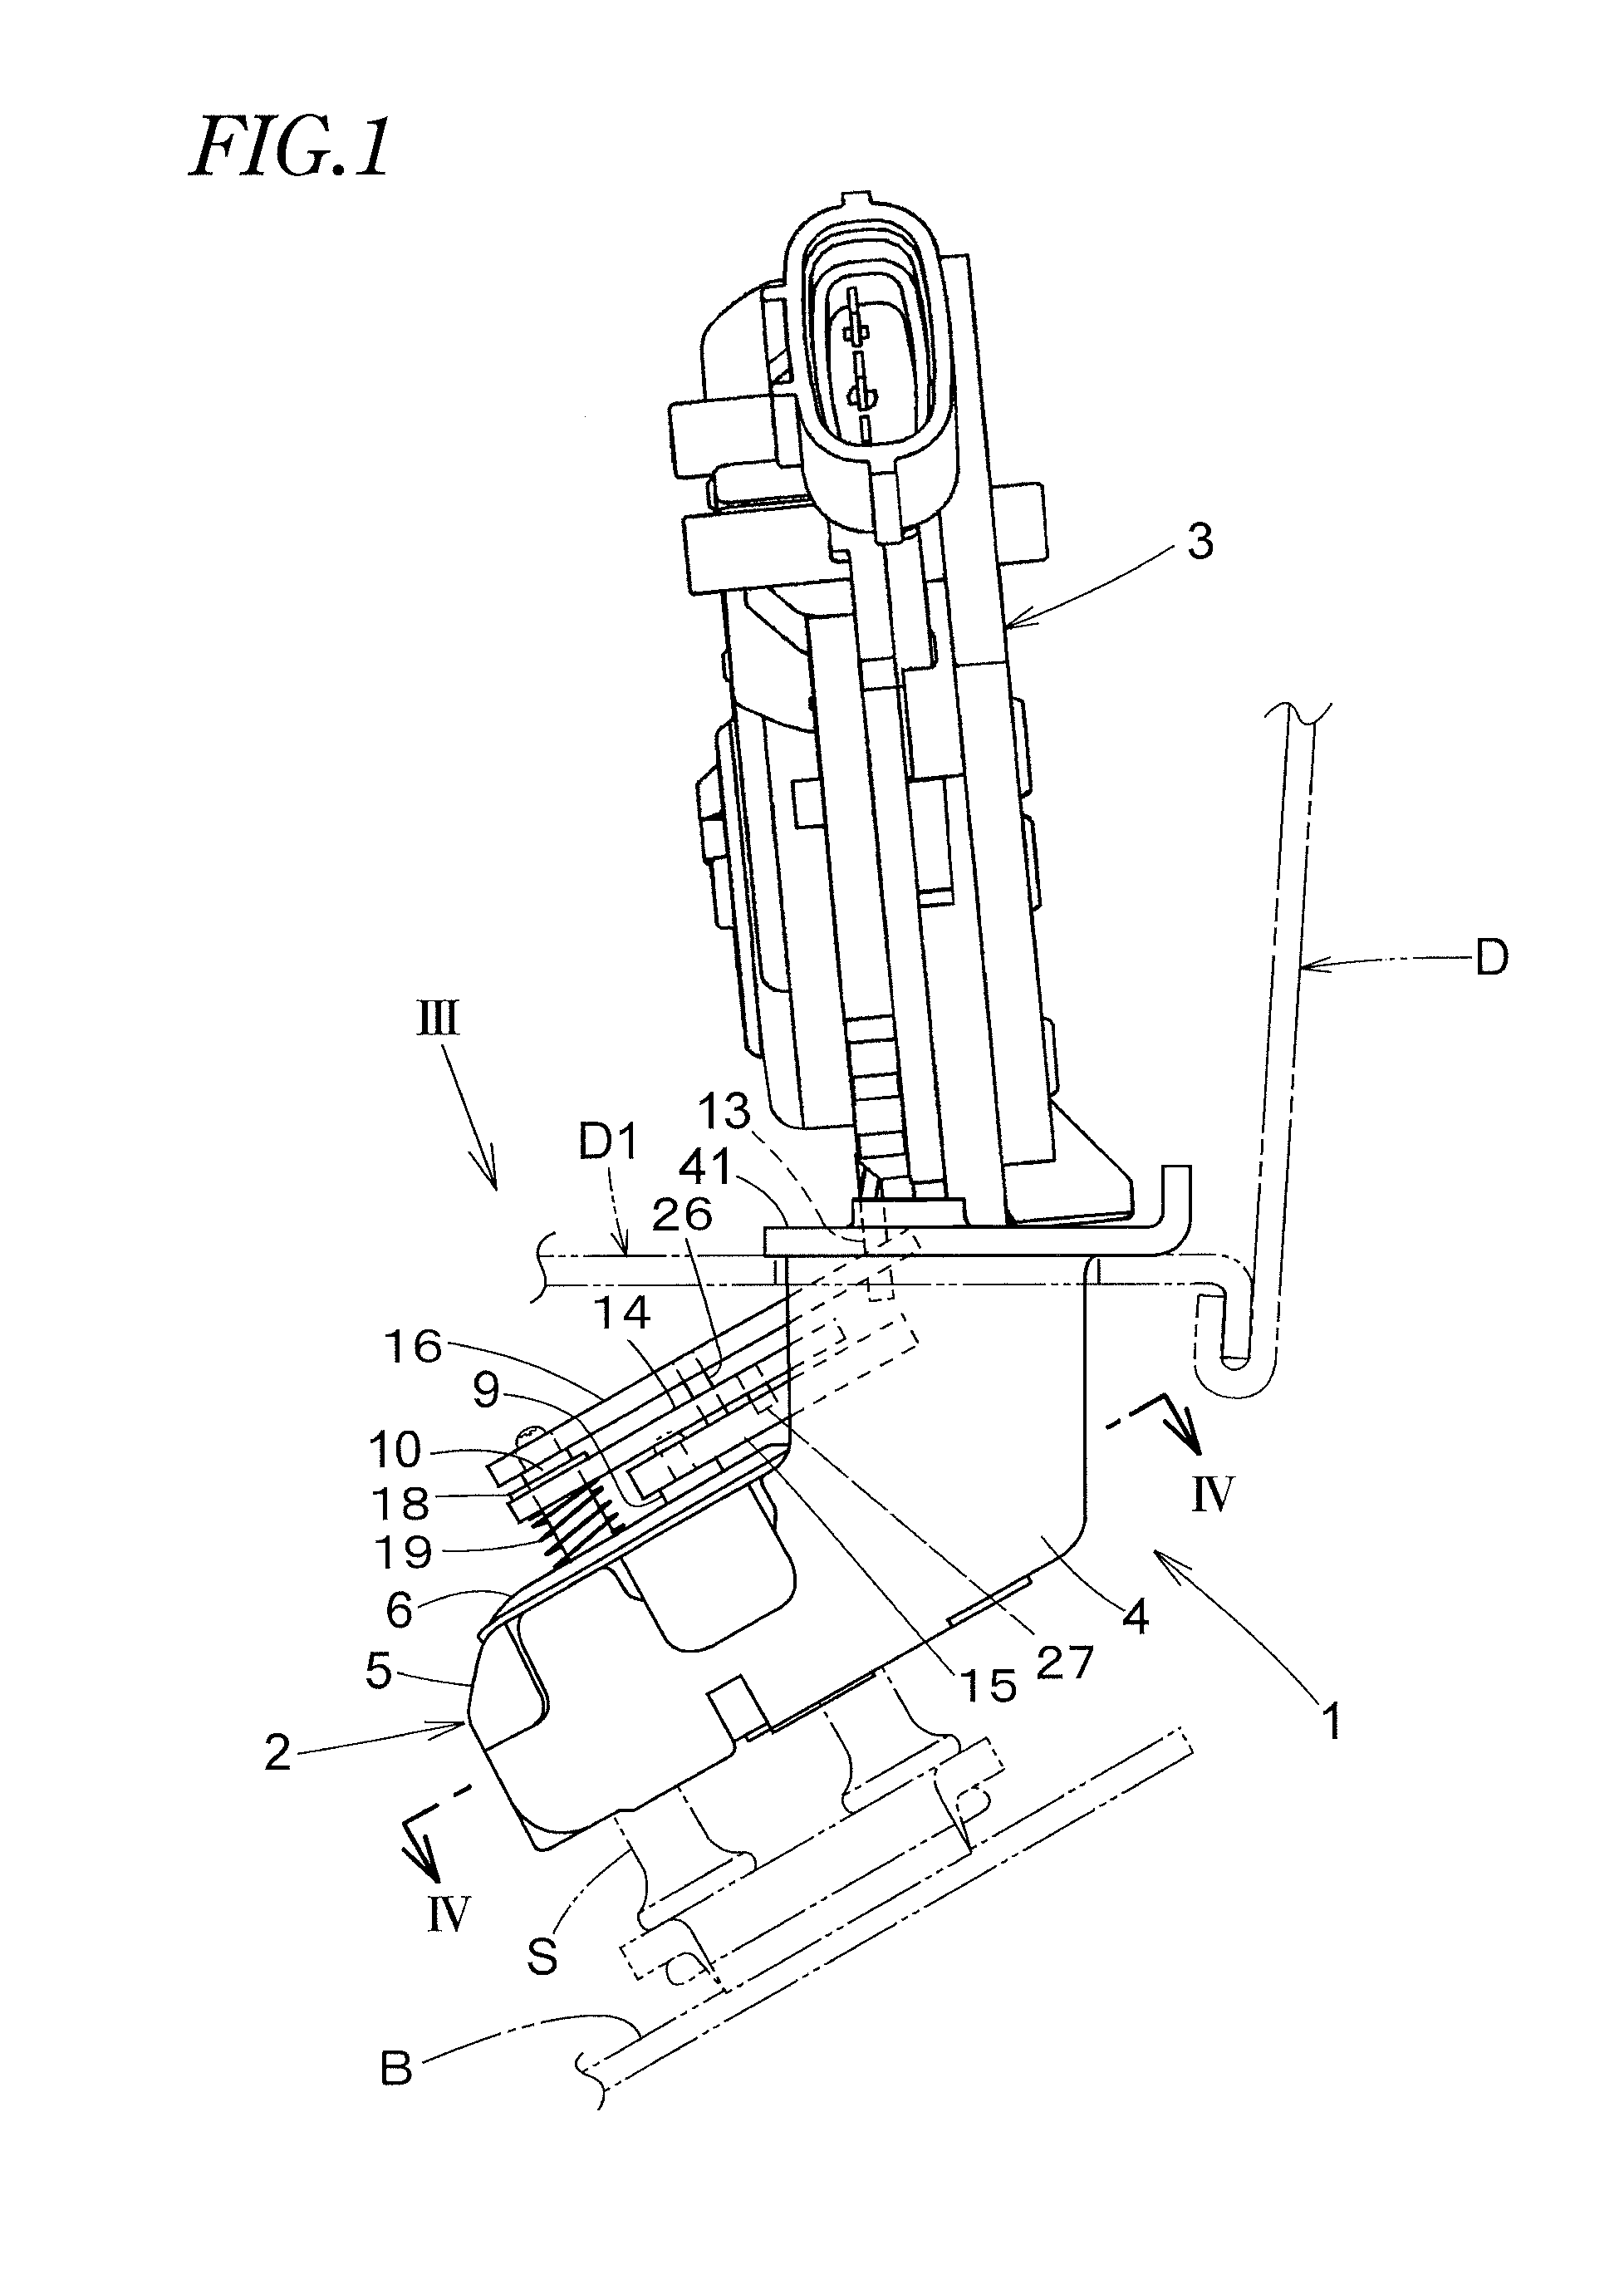 Motor-vehicle door latch device